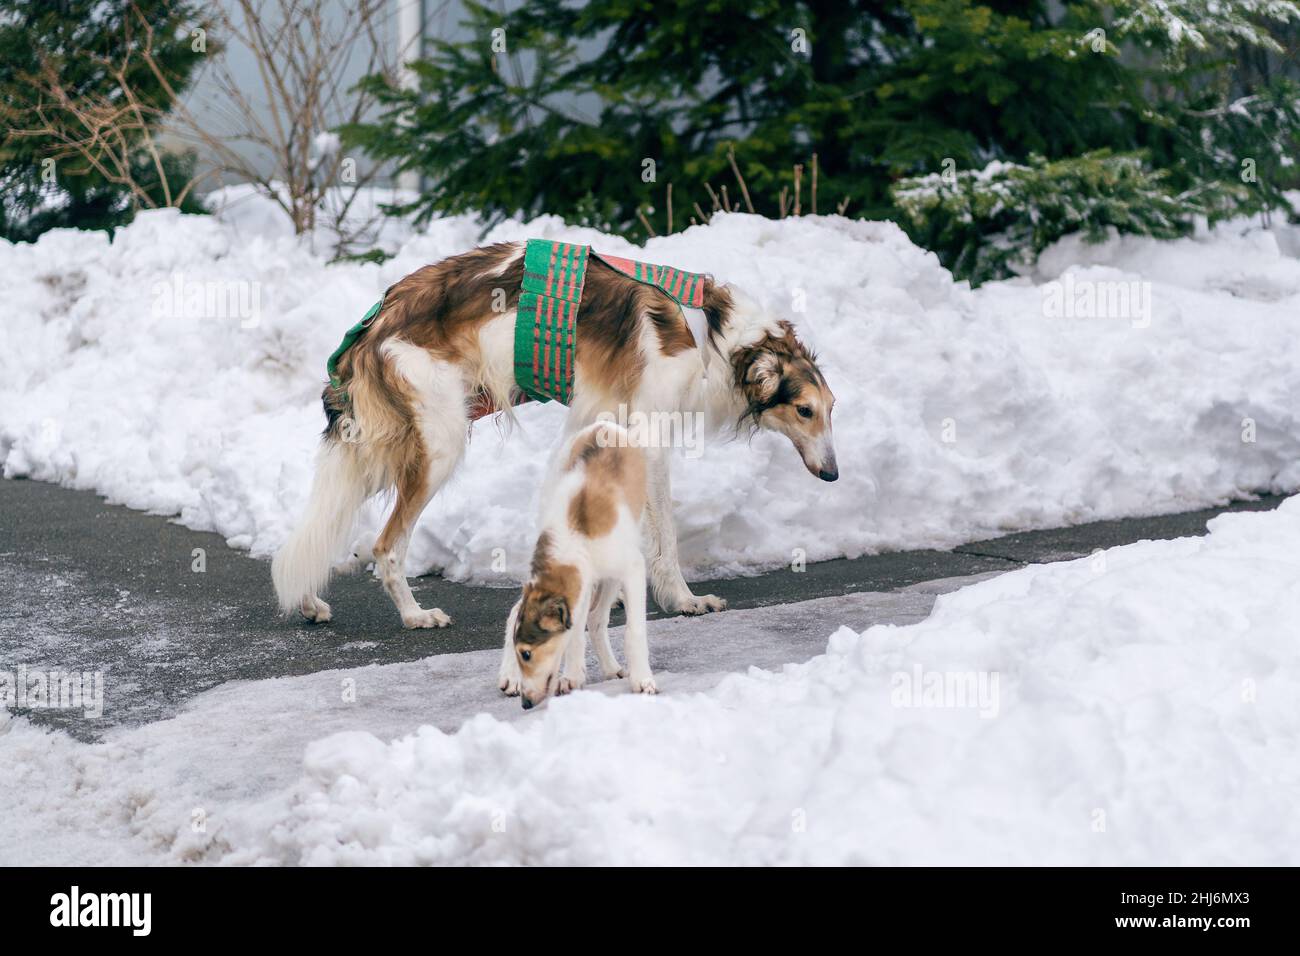 greyhound russe.La race de chien Borzoï a été développée en Russie comme chien de courtisans et de chasse. Banque D'Images